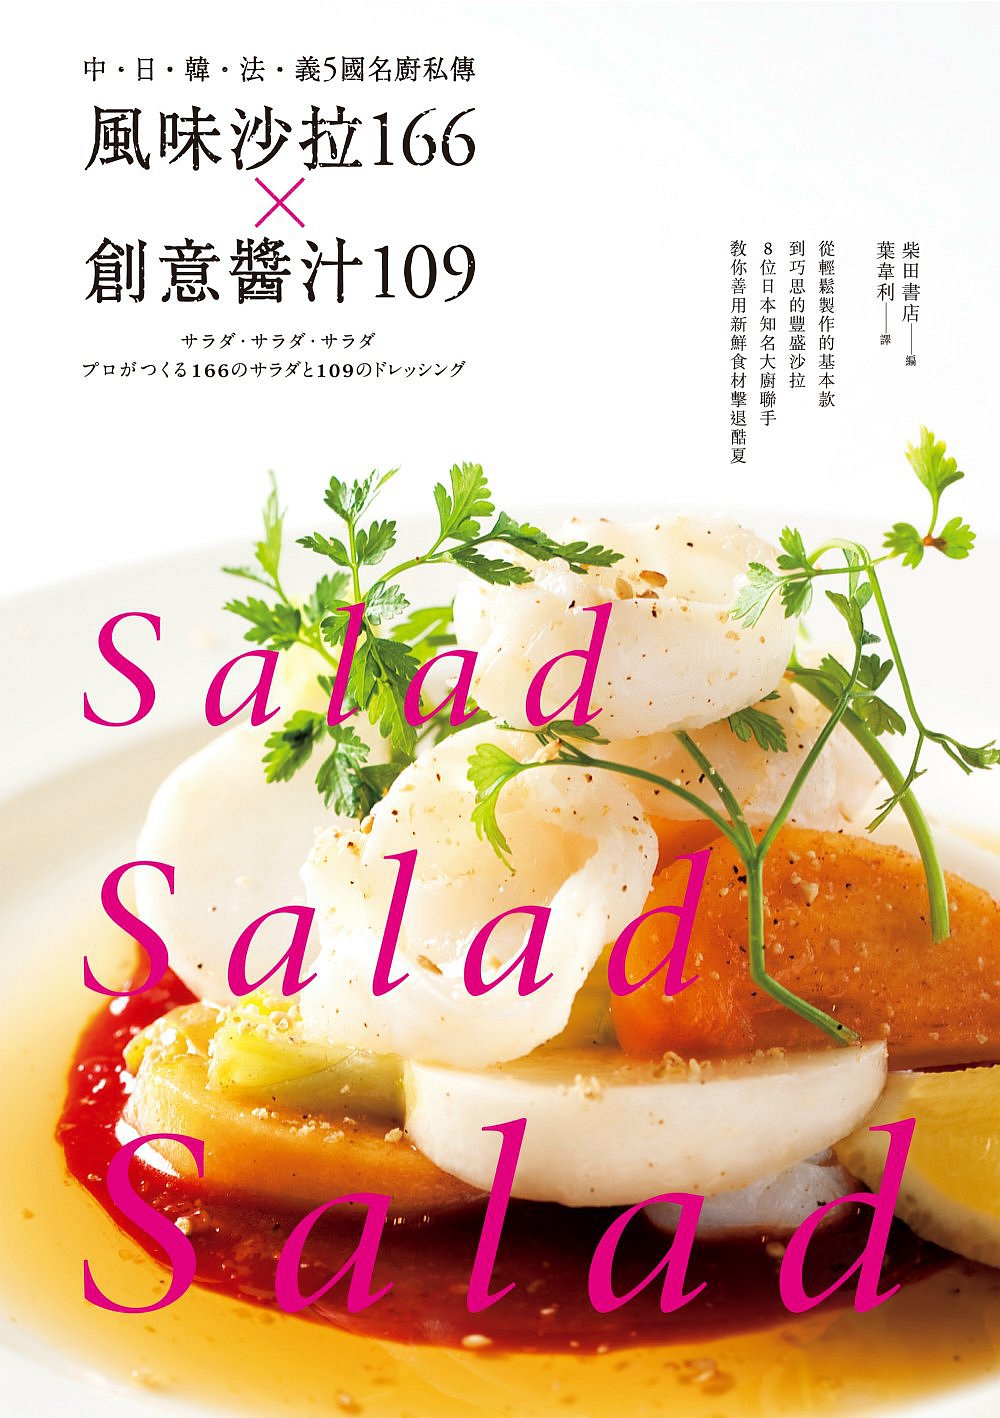 風味沙拉166╳創意醬汁109：中•日•韓•法•義5國名廚私傳